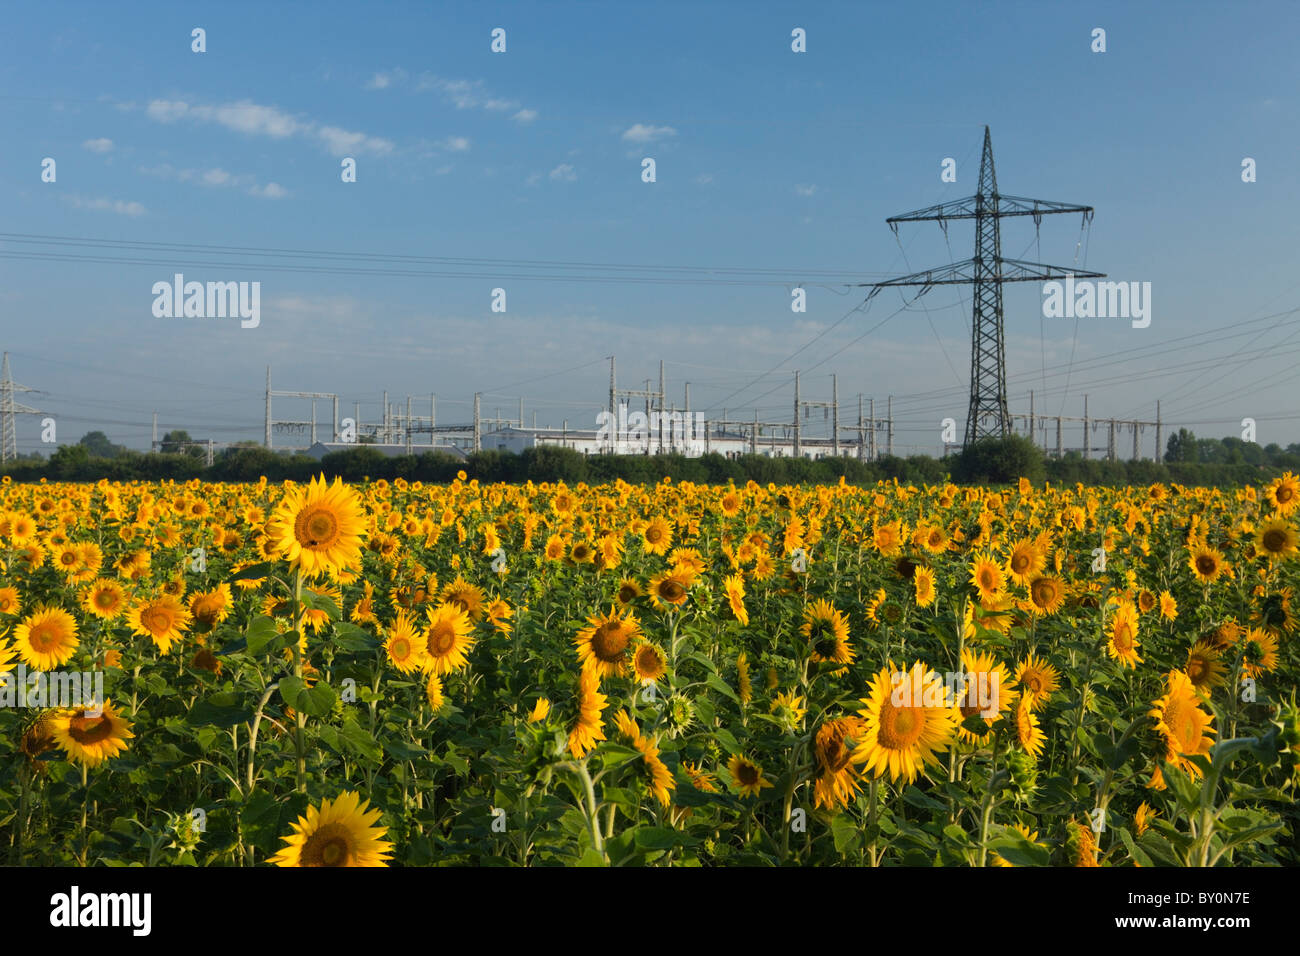 Sonnenblumenfeld in der Nähe von Strommasten, Helianthus Annuus, München, Bayern, Deutschland Stockfoto